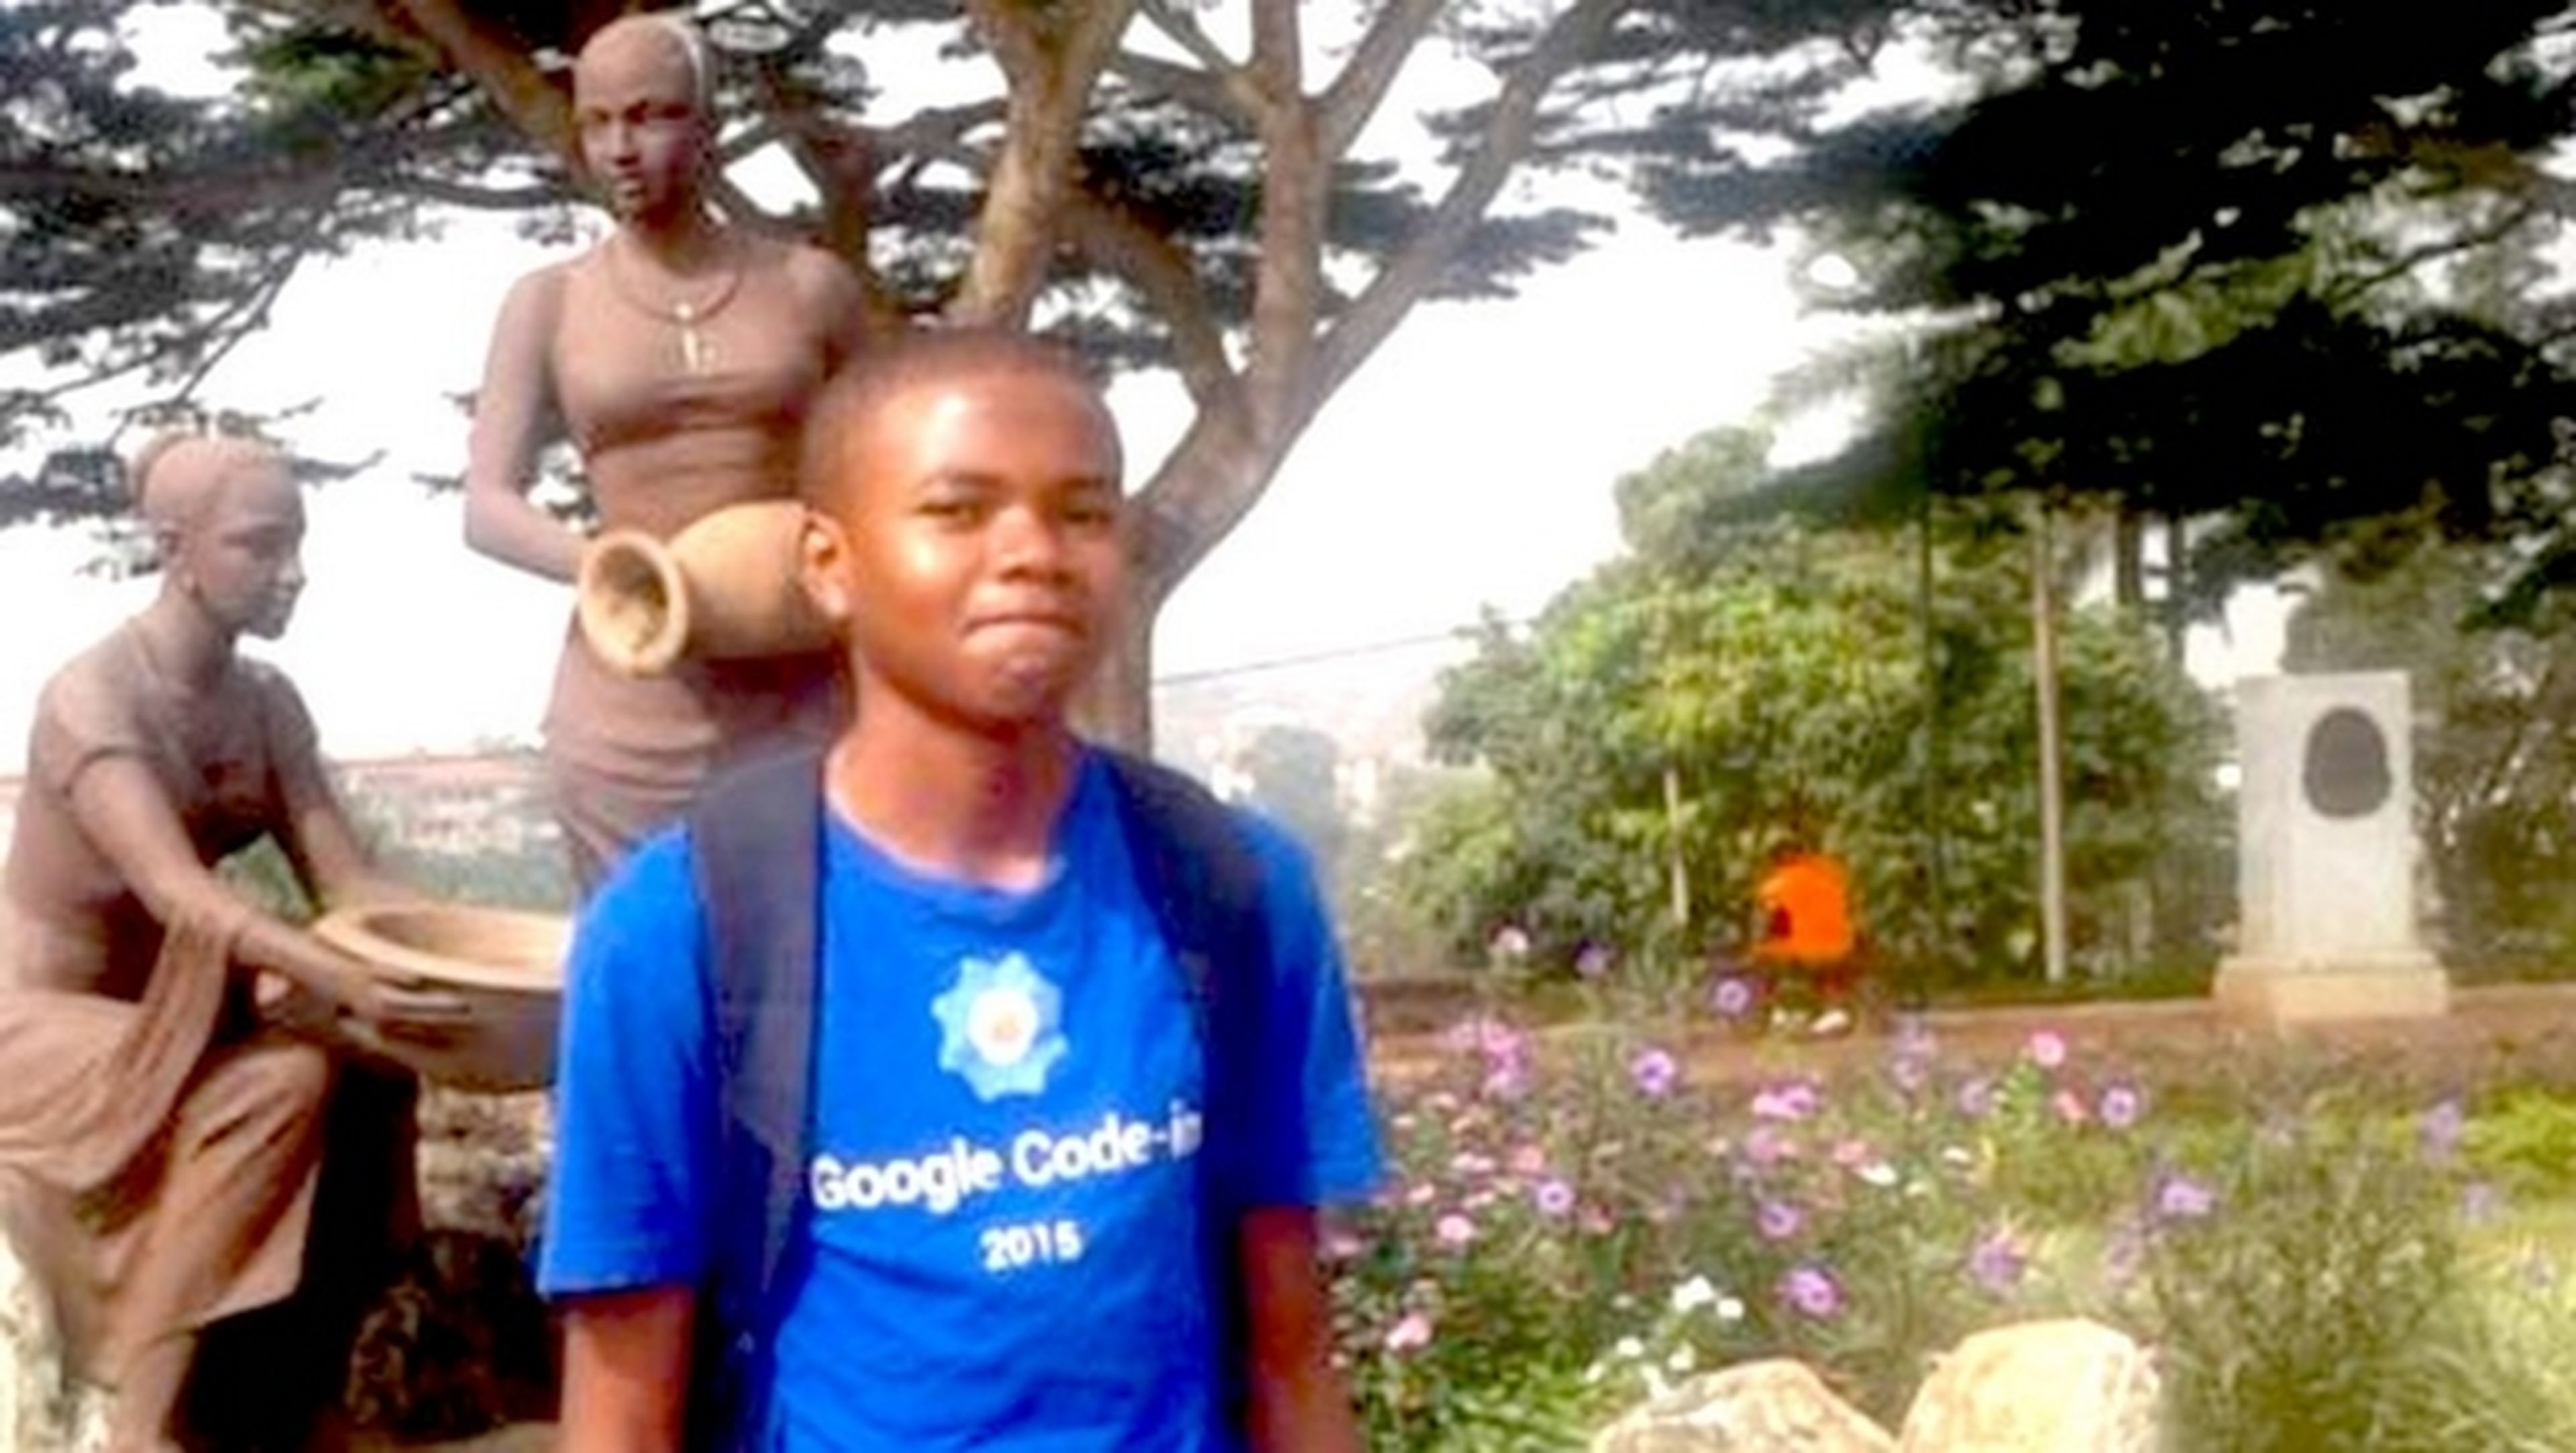 Prohíben Internet en su ciudad y un adolescente gana un concurso de Google